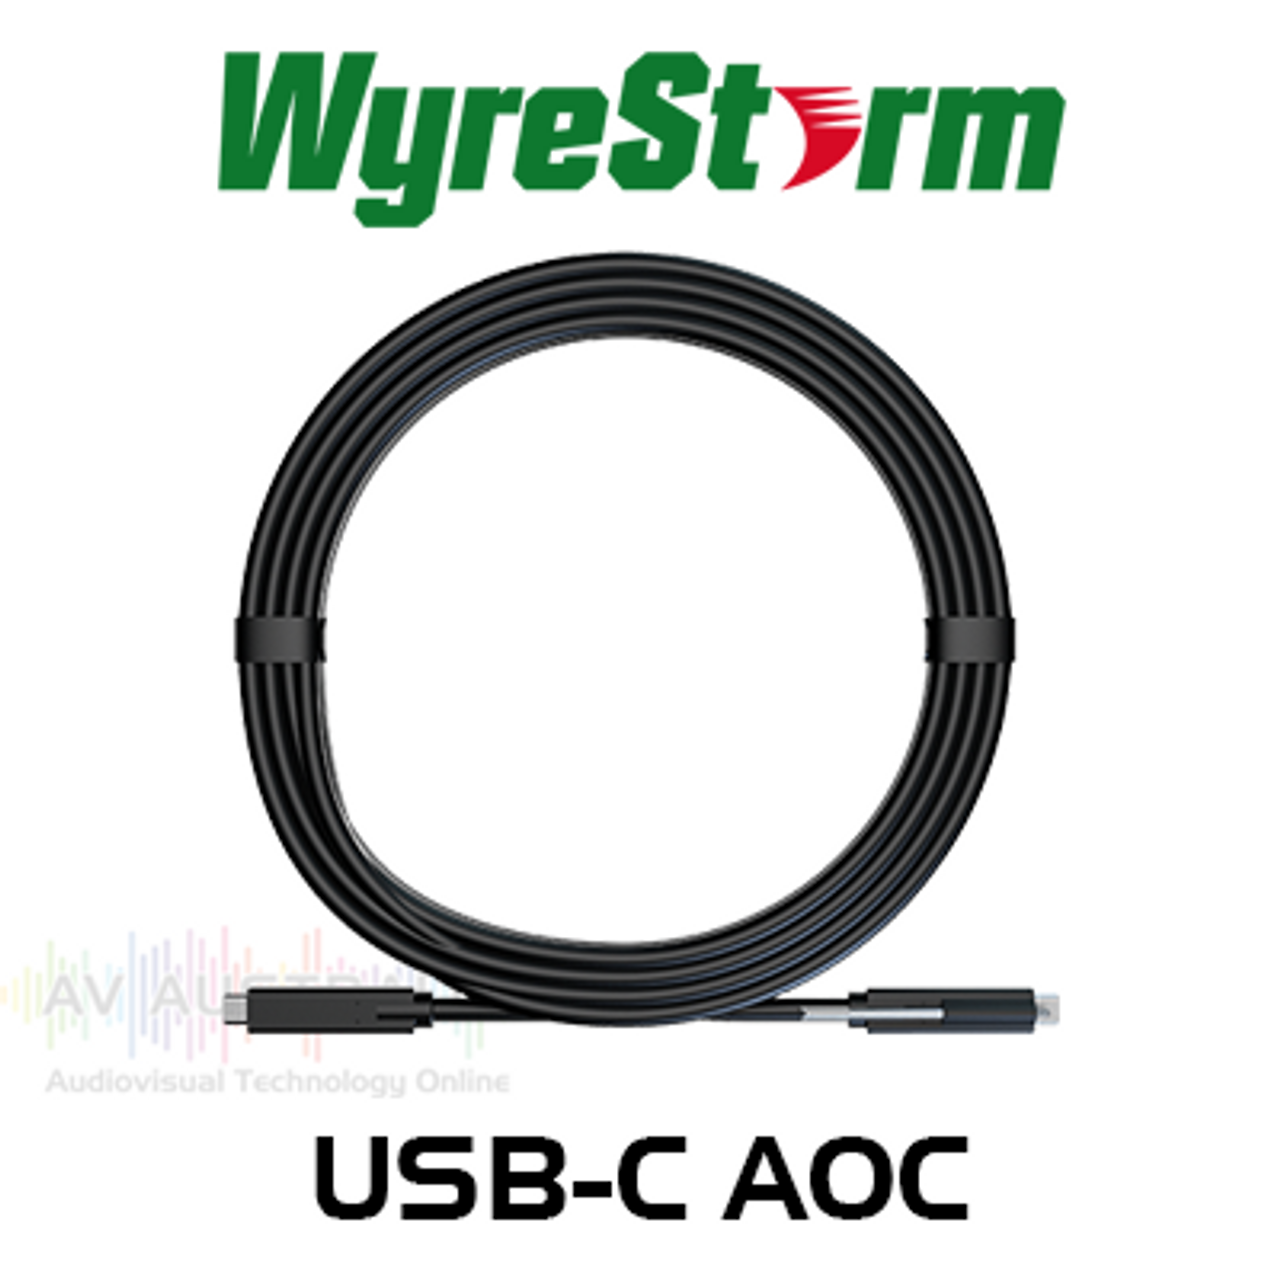 WyreStorm 15m USB-C Active Optical Cable